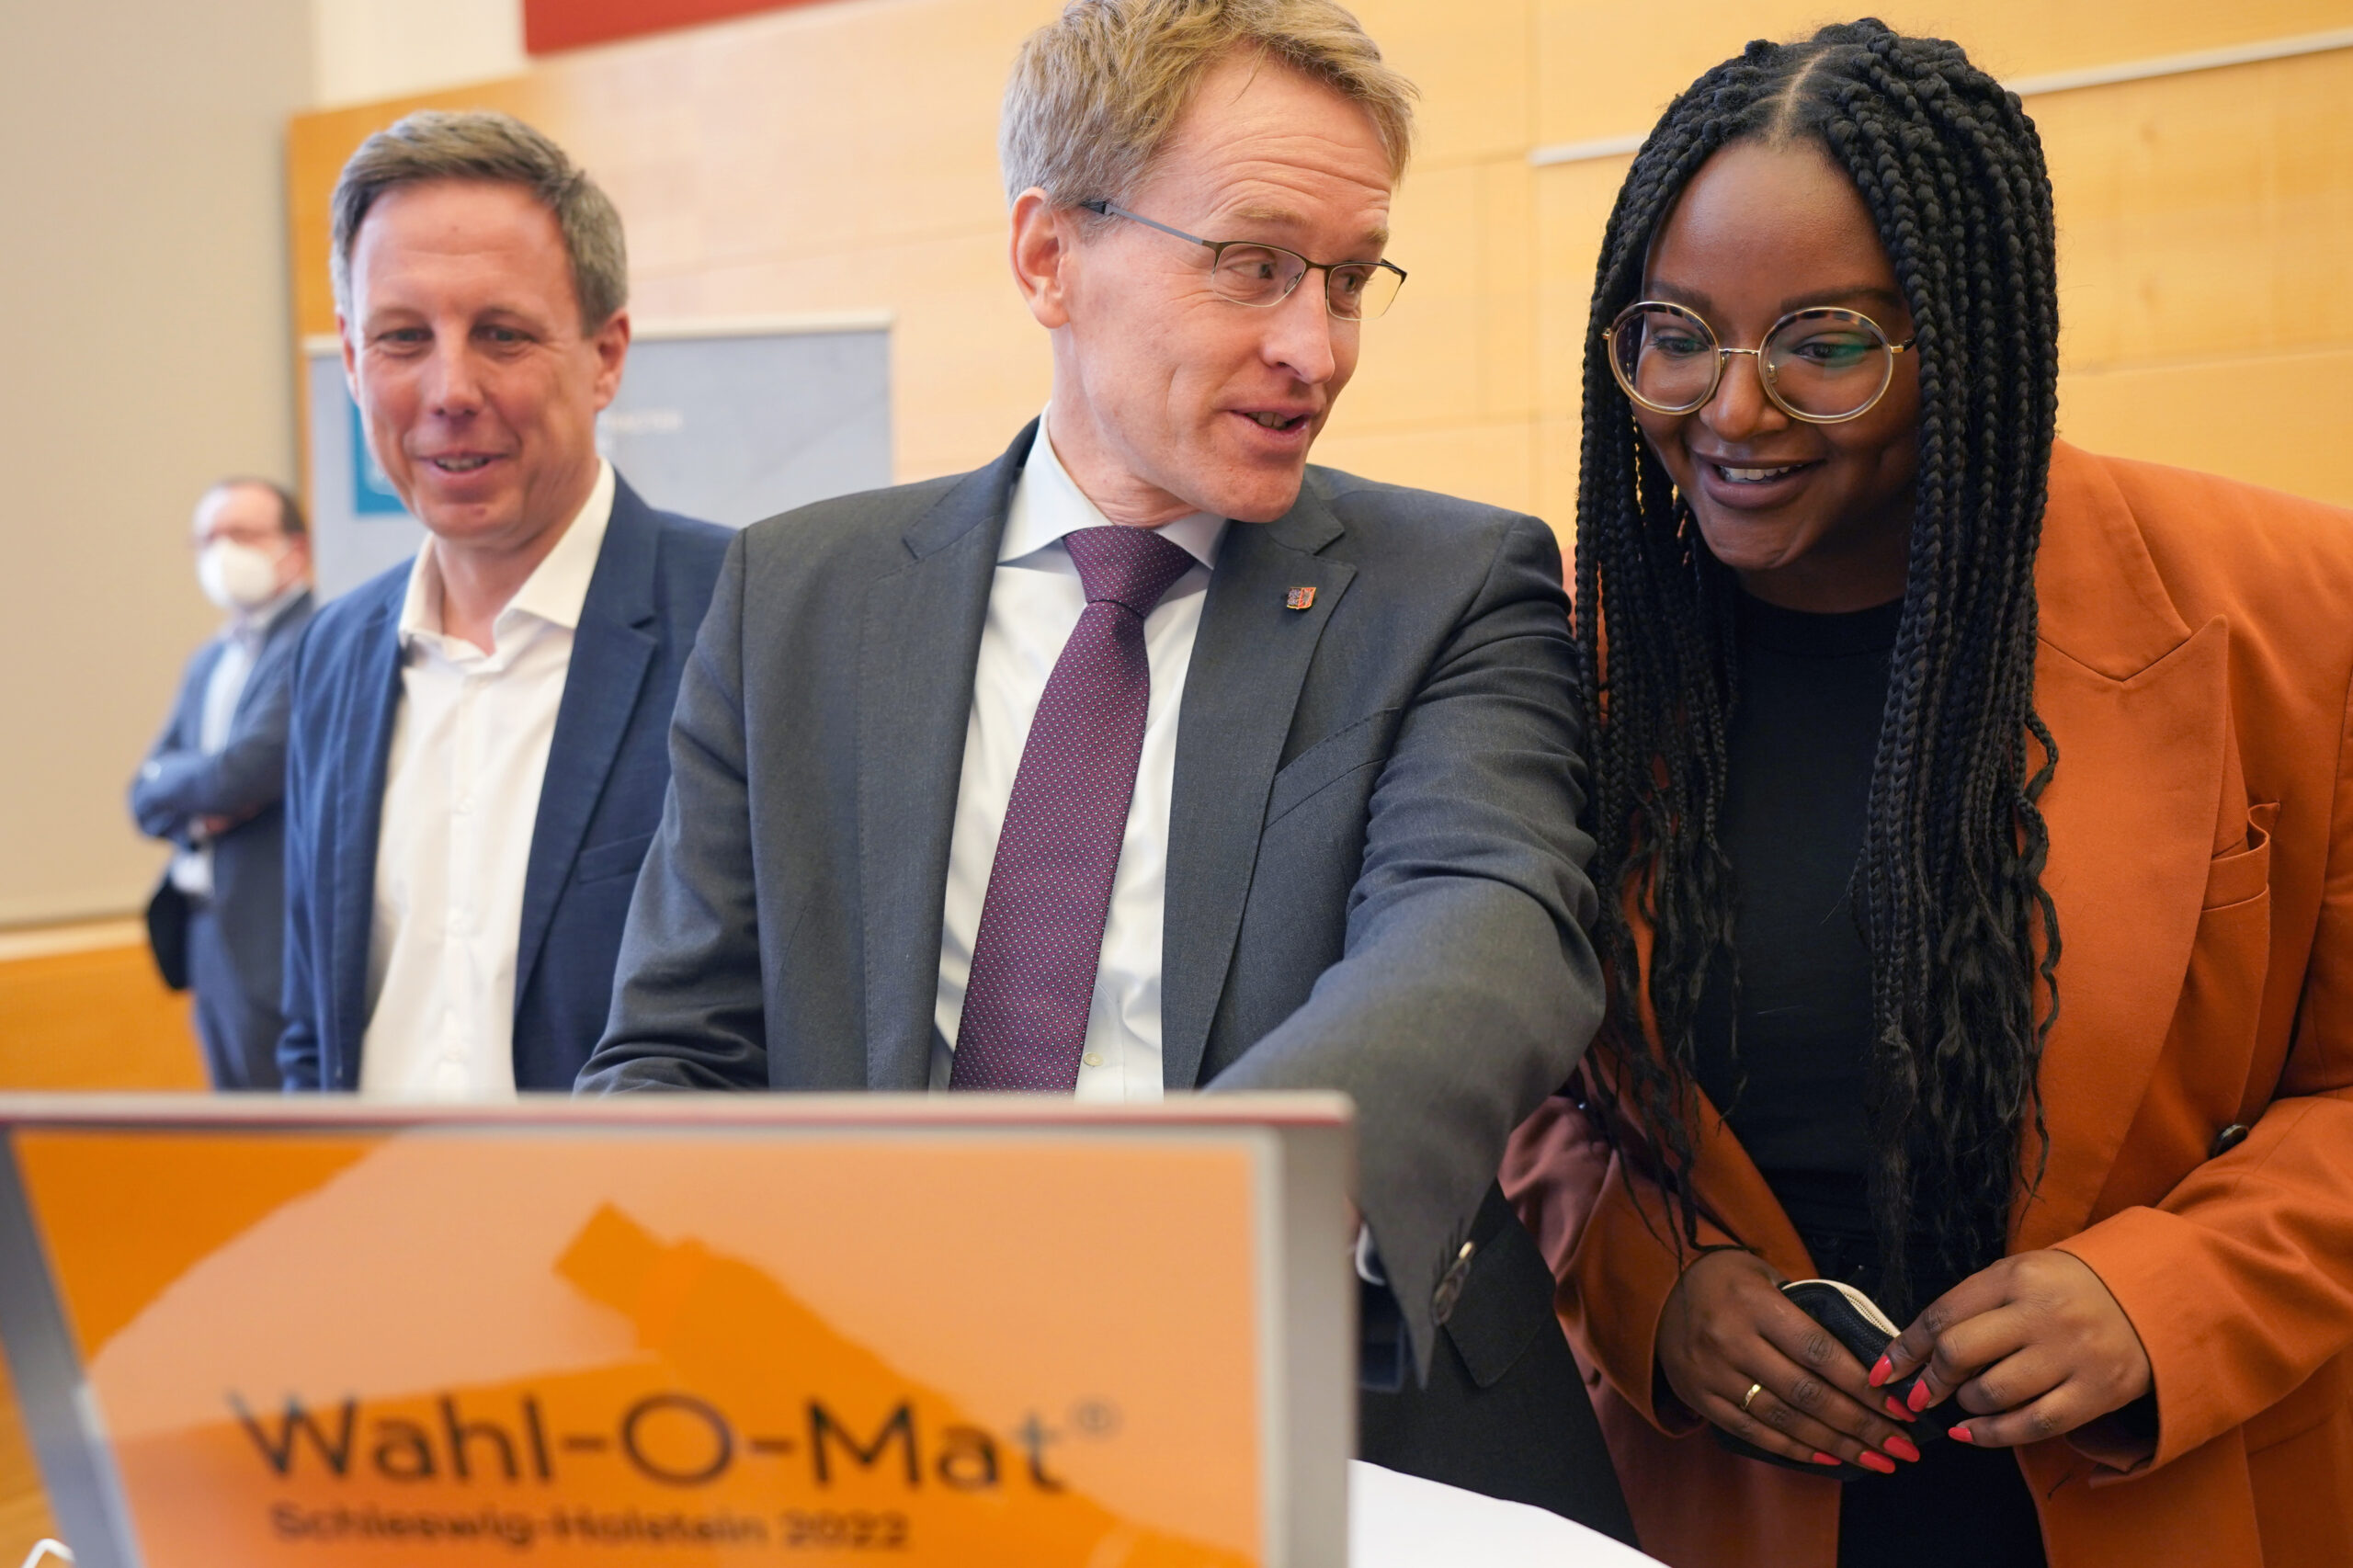 Spitzenkandidat:innen Thomas Losse-Müller (SPD), Daniel Günther (CDU) und Aminata Touré (Bündnis 90/Die Grünen) während des Starts des Wahl-O-Mat zur Landtagswahl in Schleswig-Holstein.